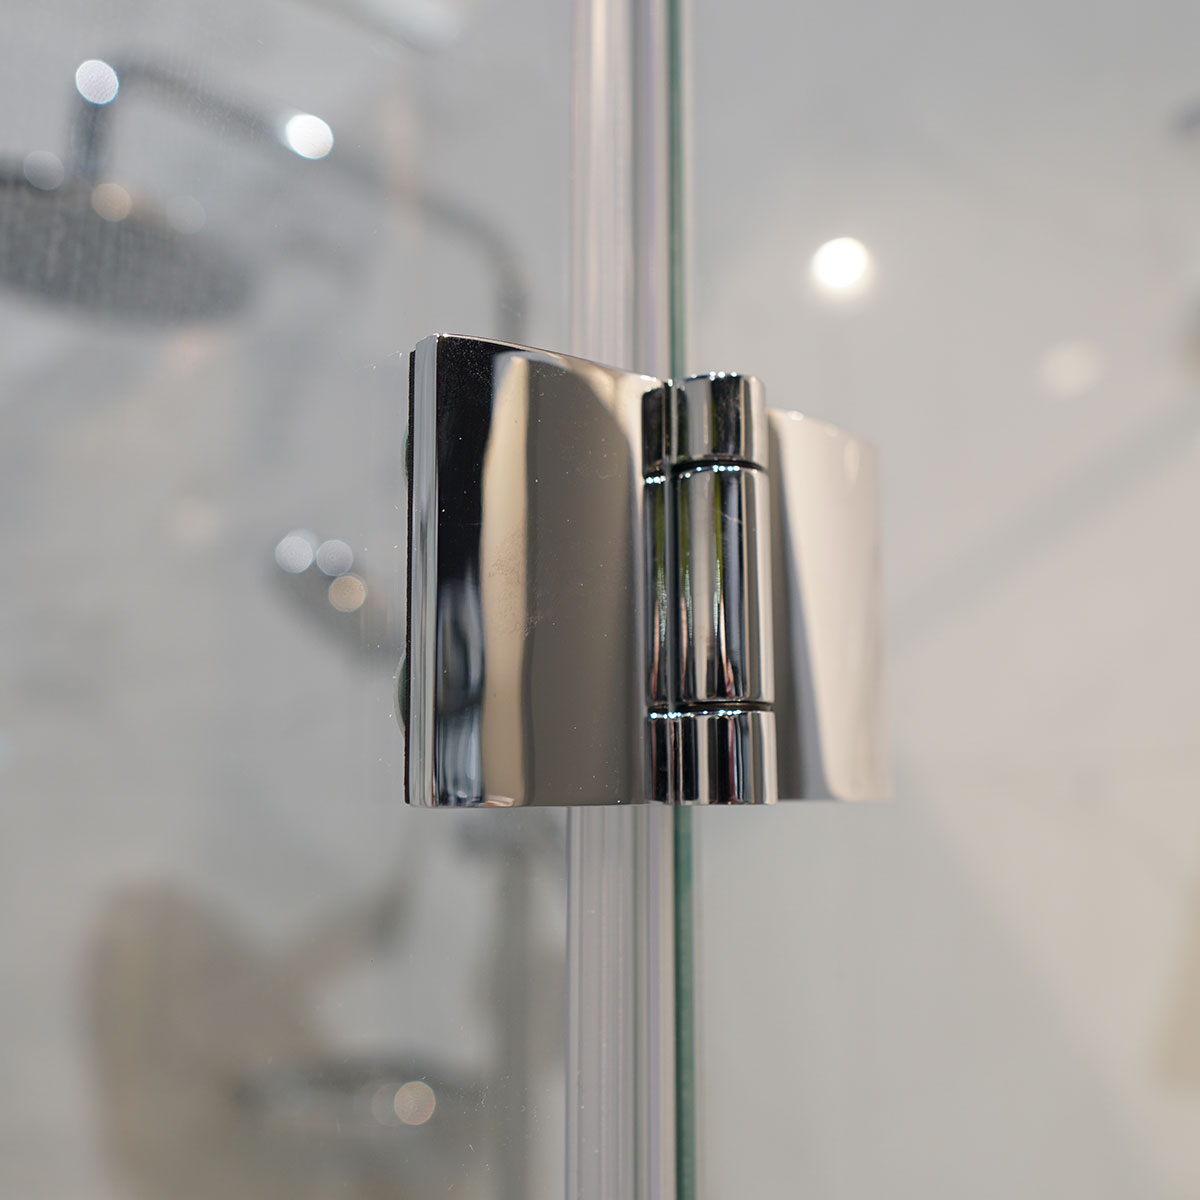 Crosswater DESIGN 8 Hinged Shower Door With Inline Panel Deluxe Bathrooms Ireland